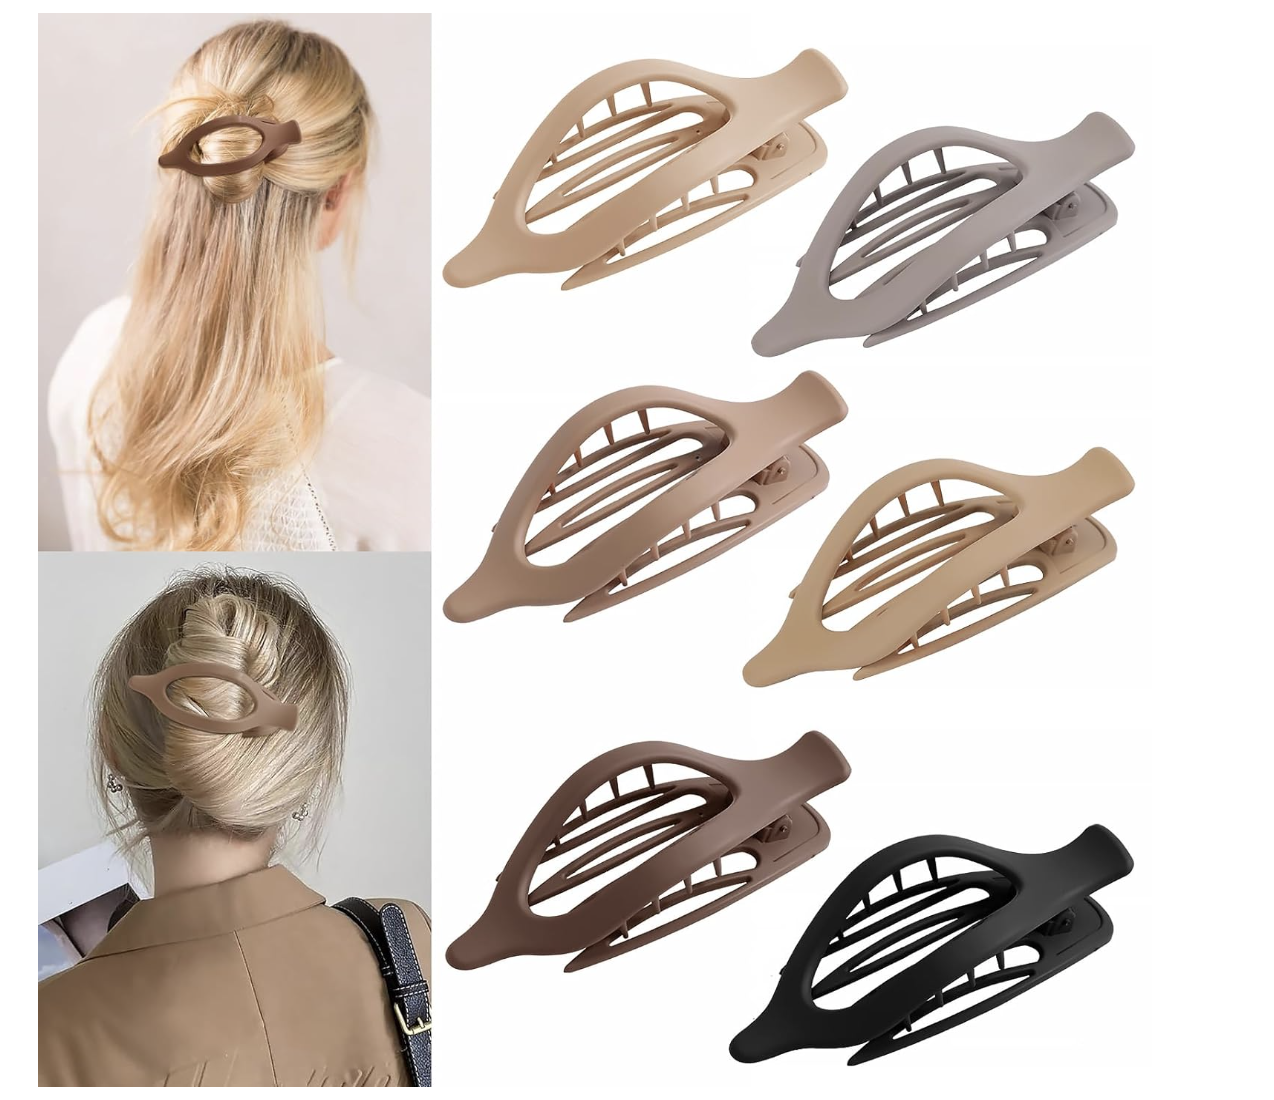 hair clips - amazon